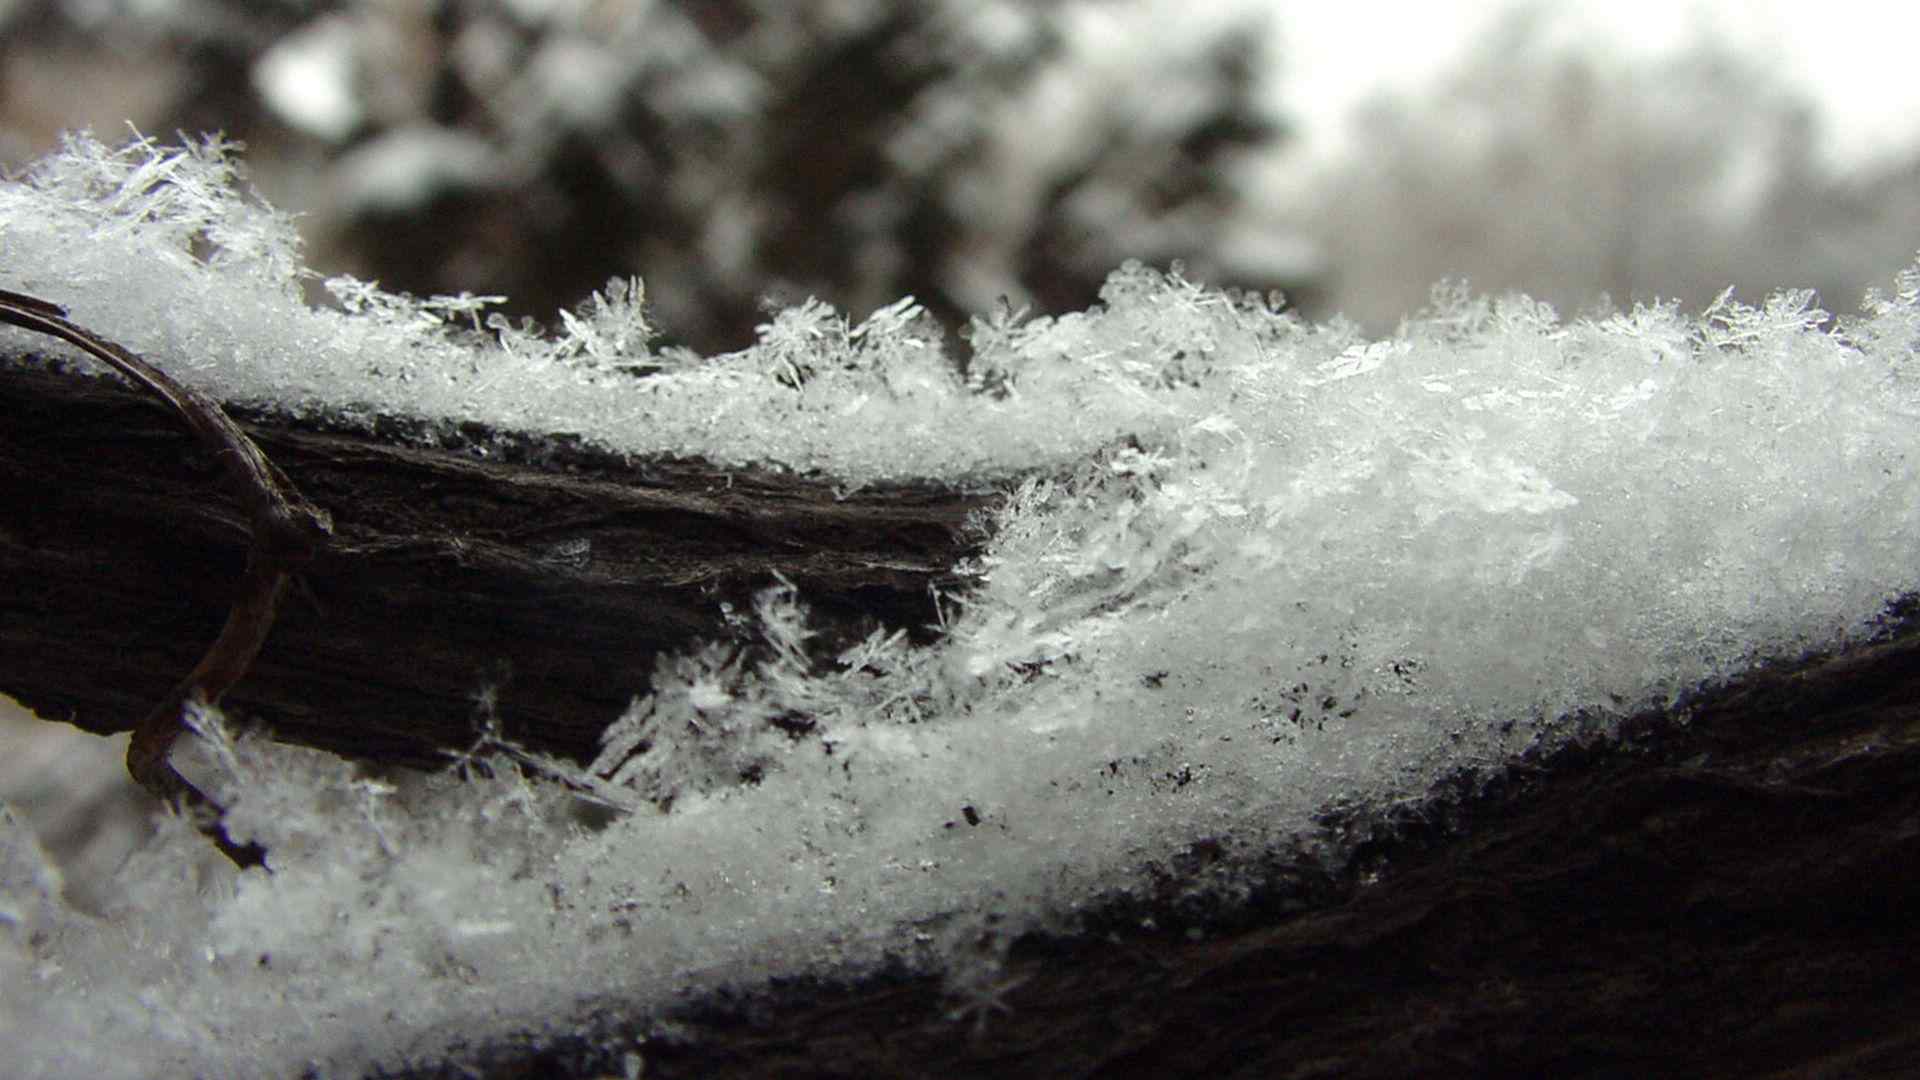 冬季飘落在枯木上的雪花高清桌面壁纸